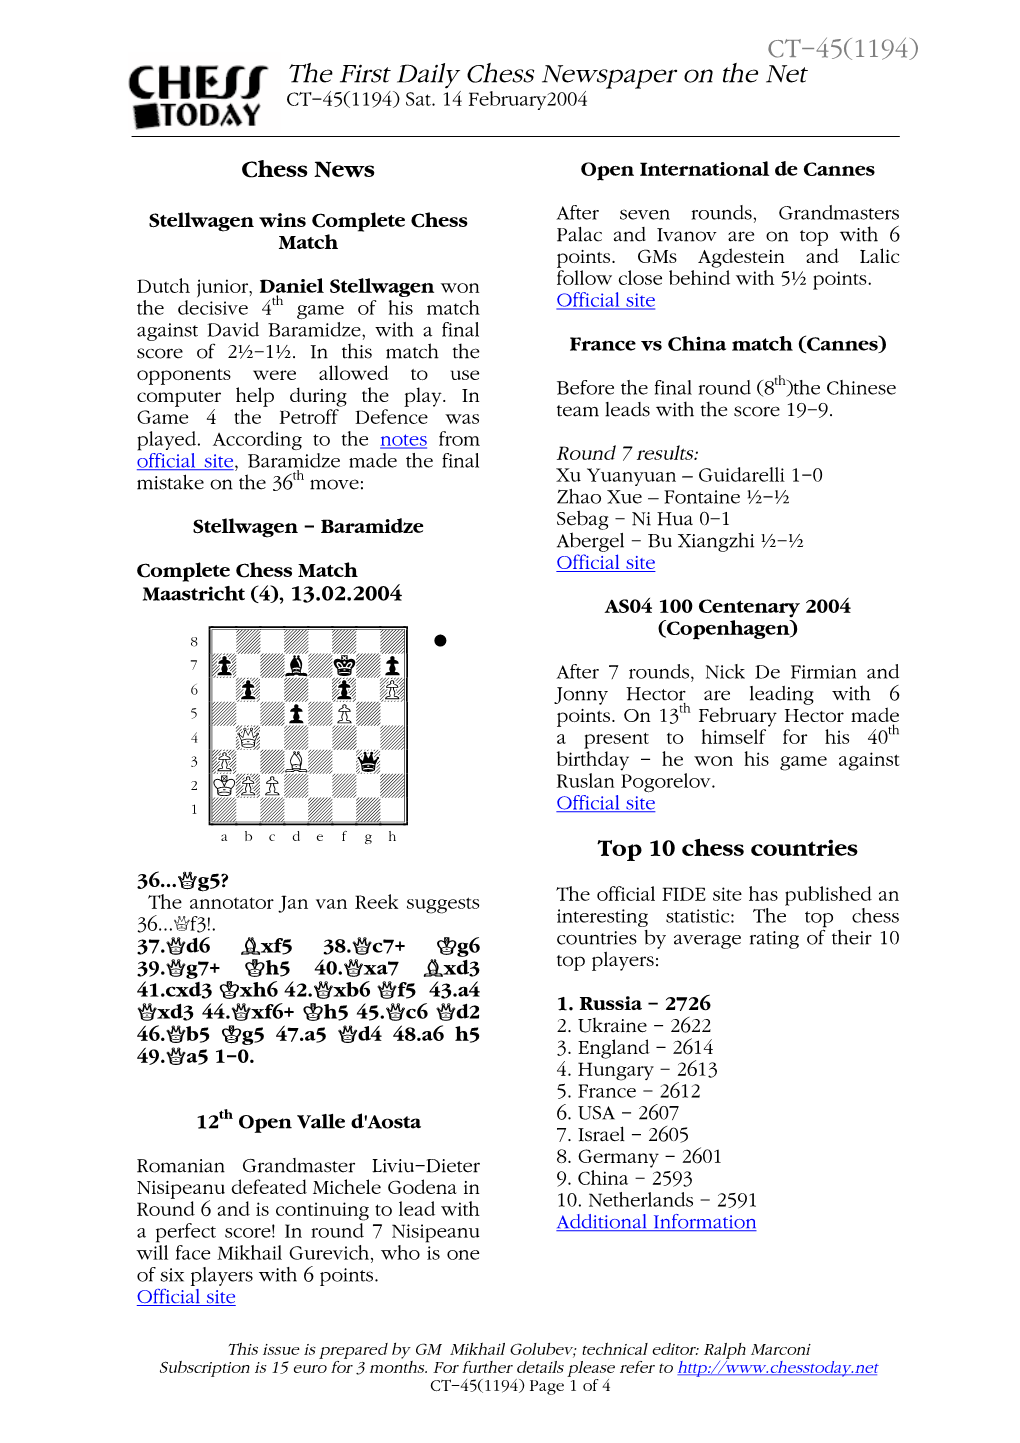 Stellwagen Wins Complete Chess Match